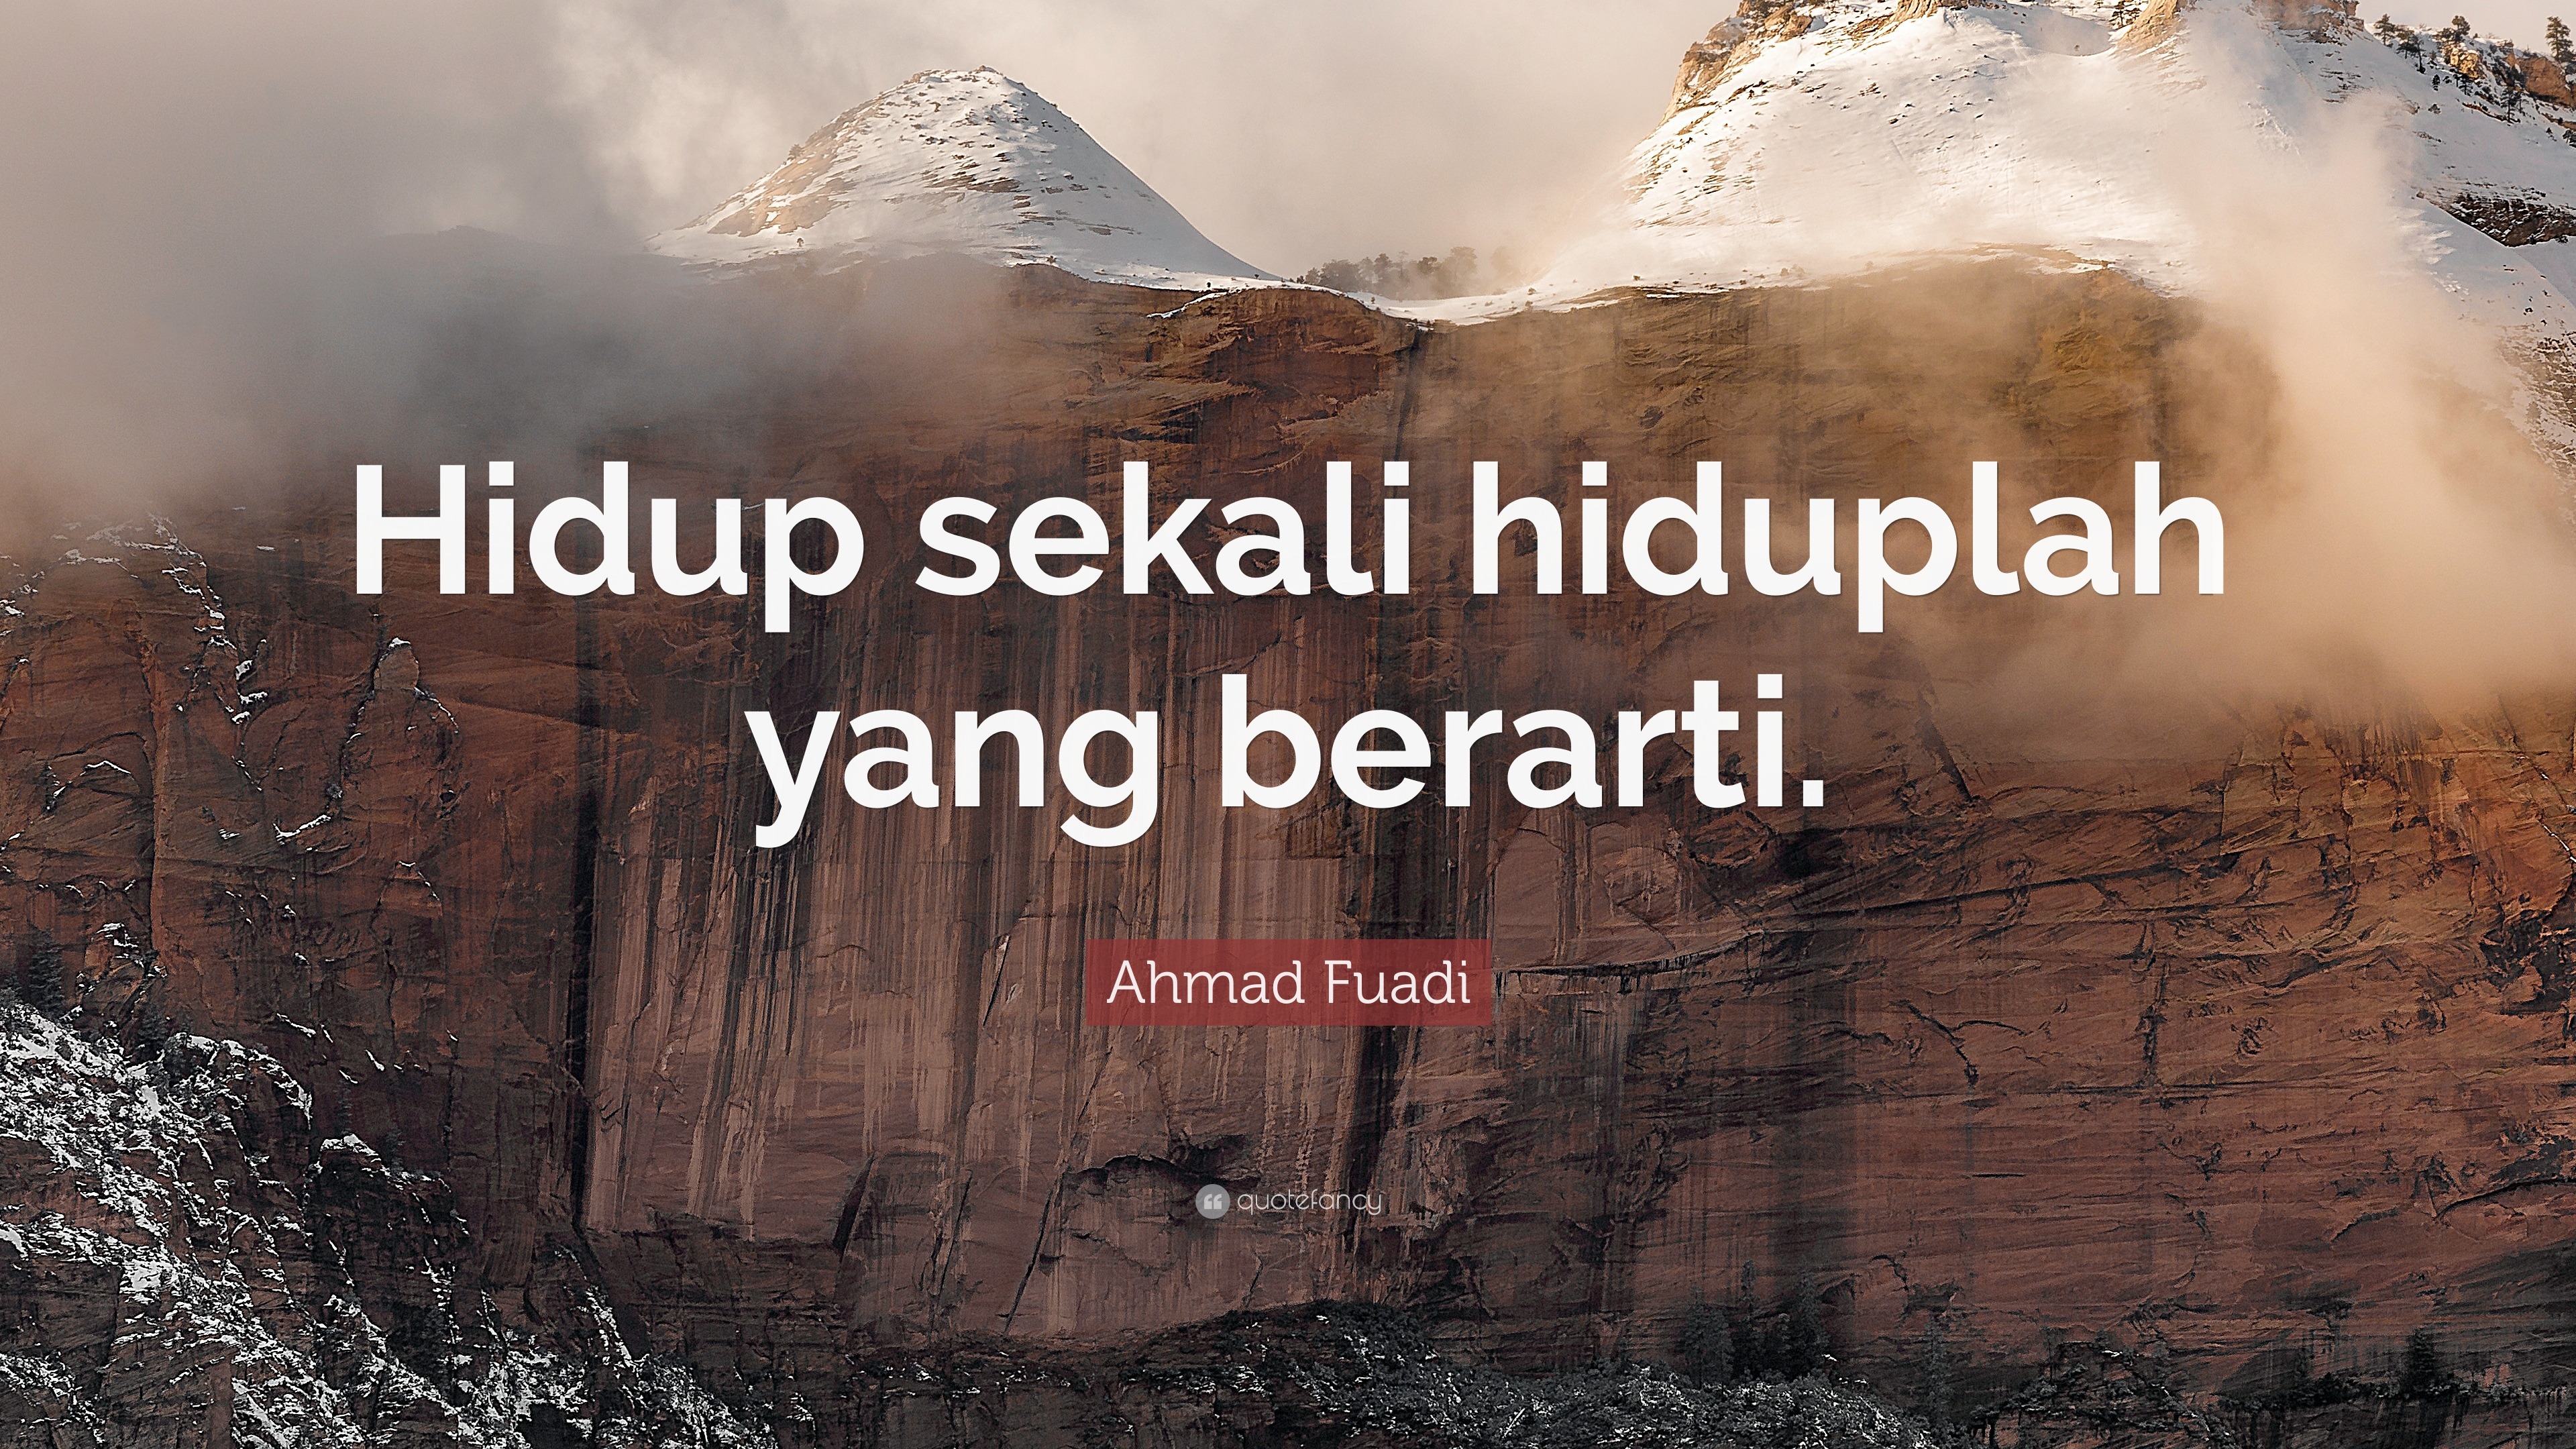 Ahmad Fuadi Quote: "Hidup sekali hiduplah yang berarti ...